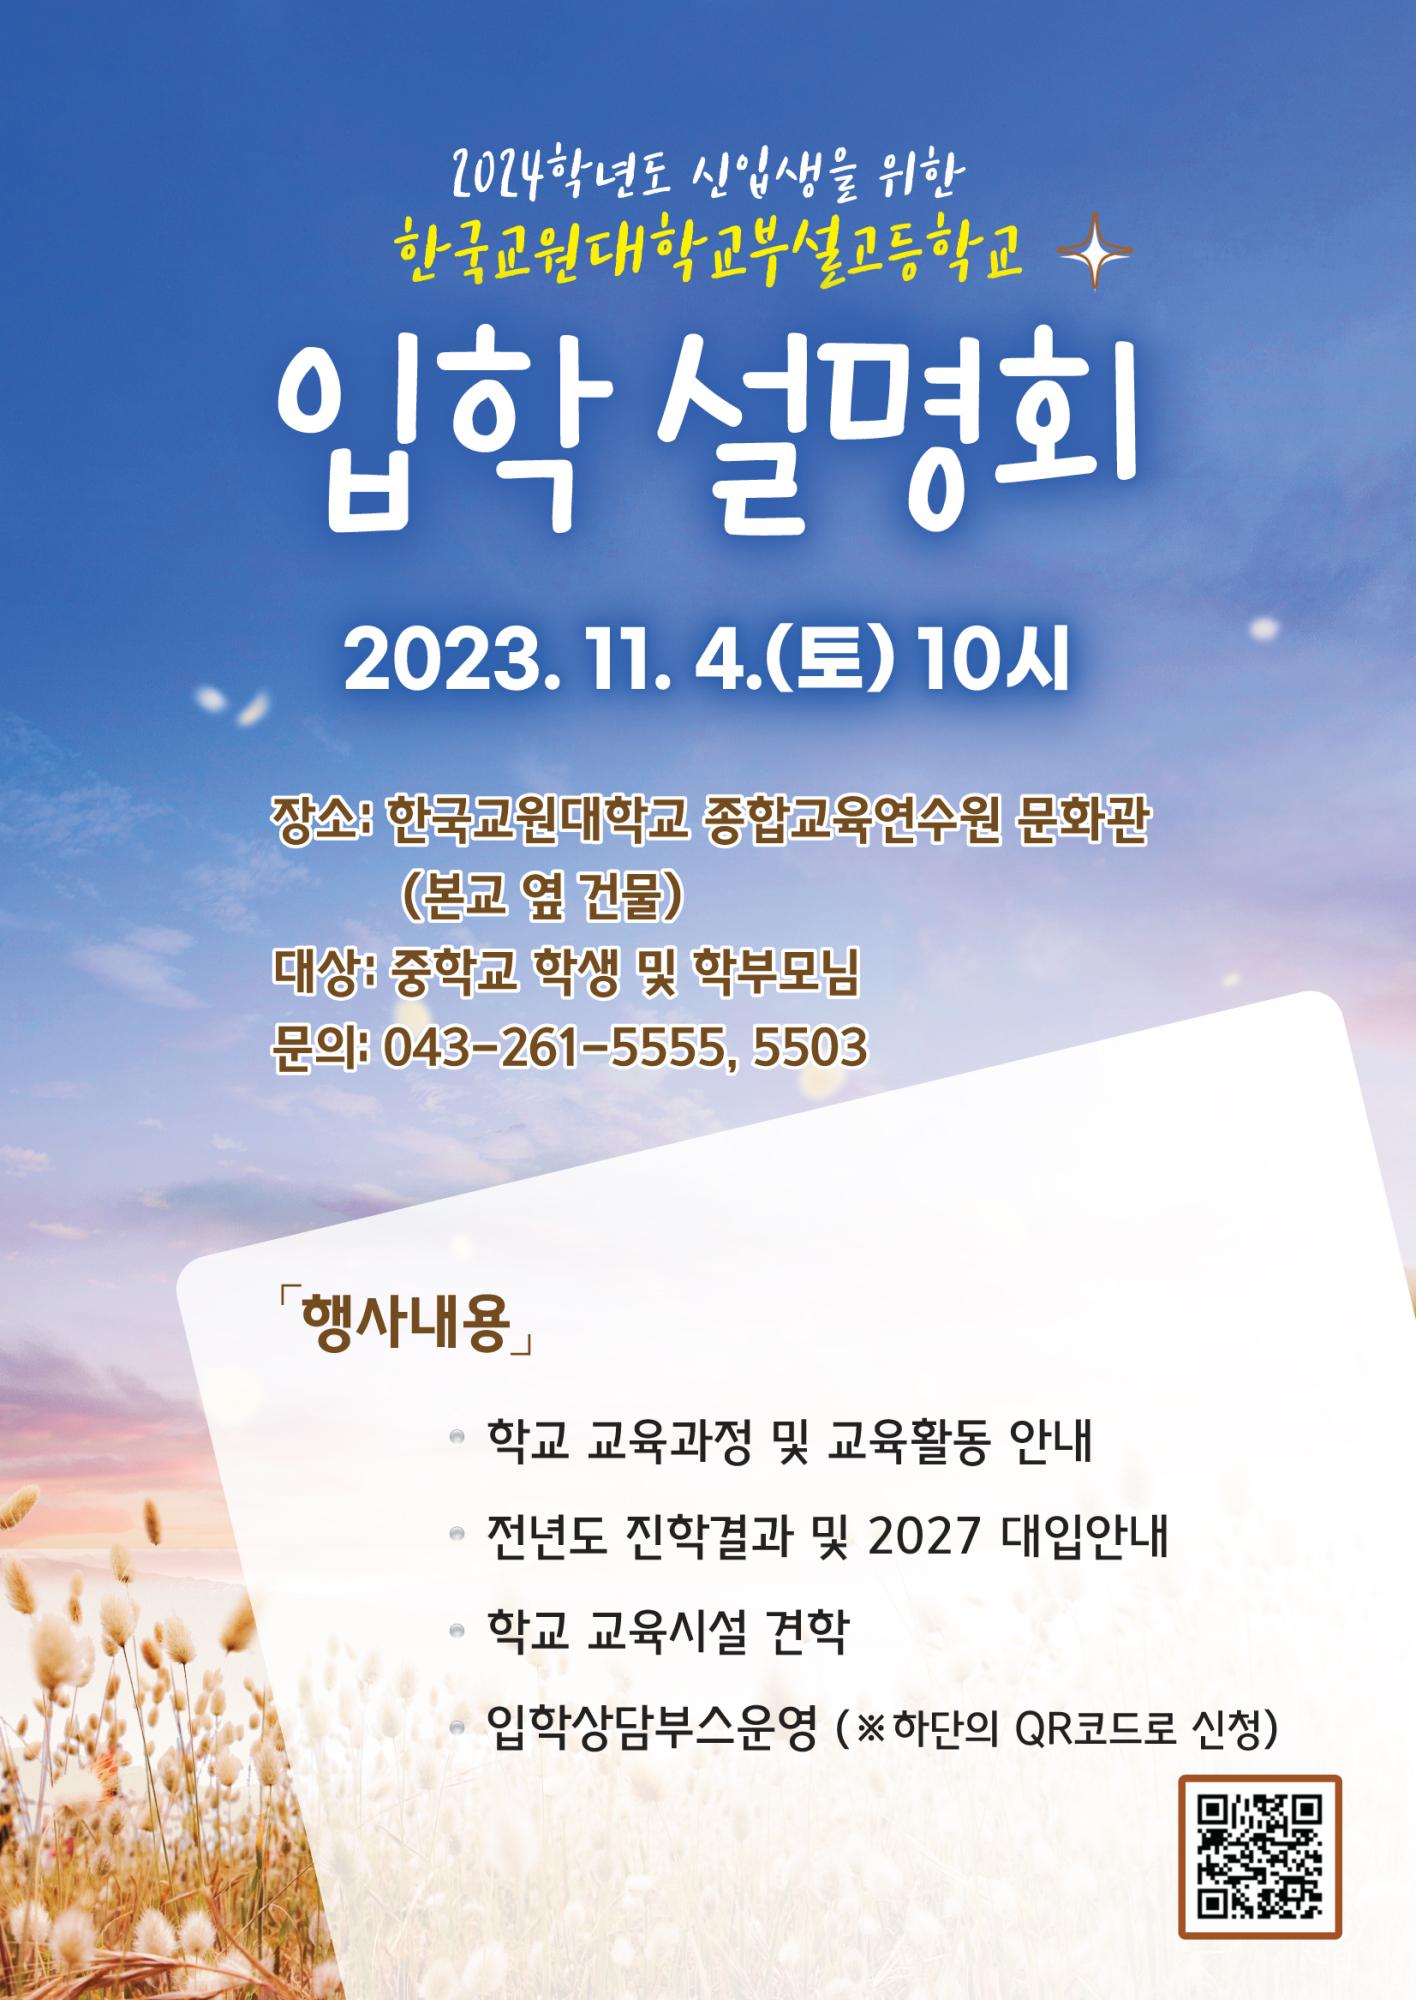 2024학년도 신입생 모집을 위한 입학설명회 안내문